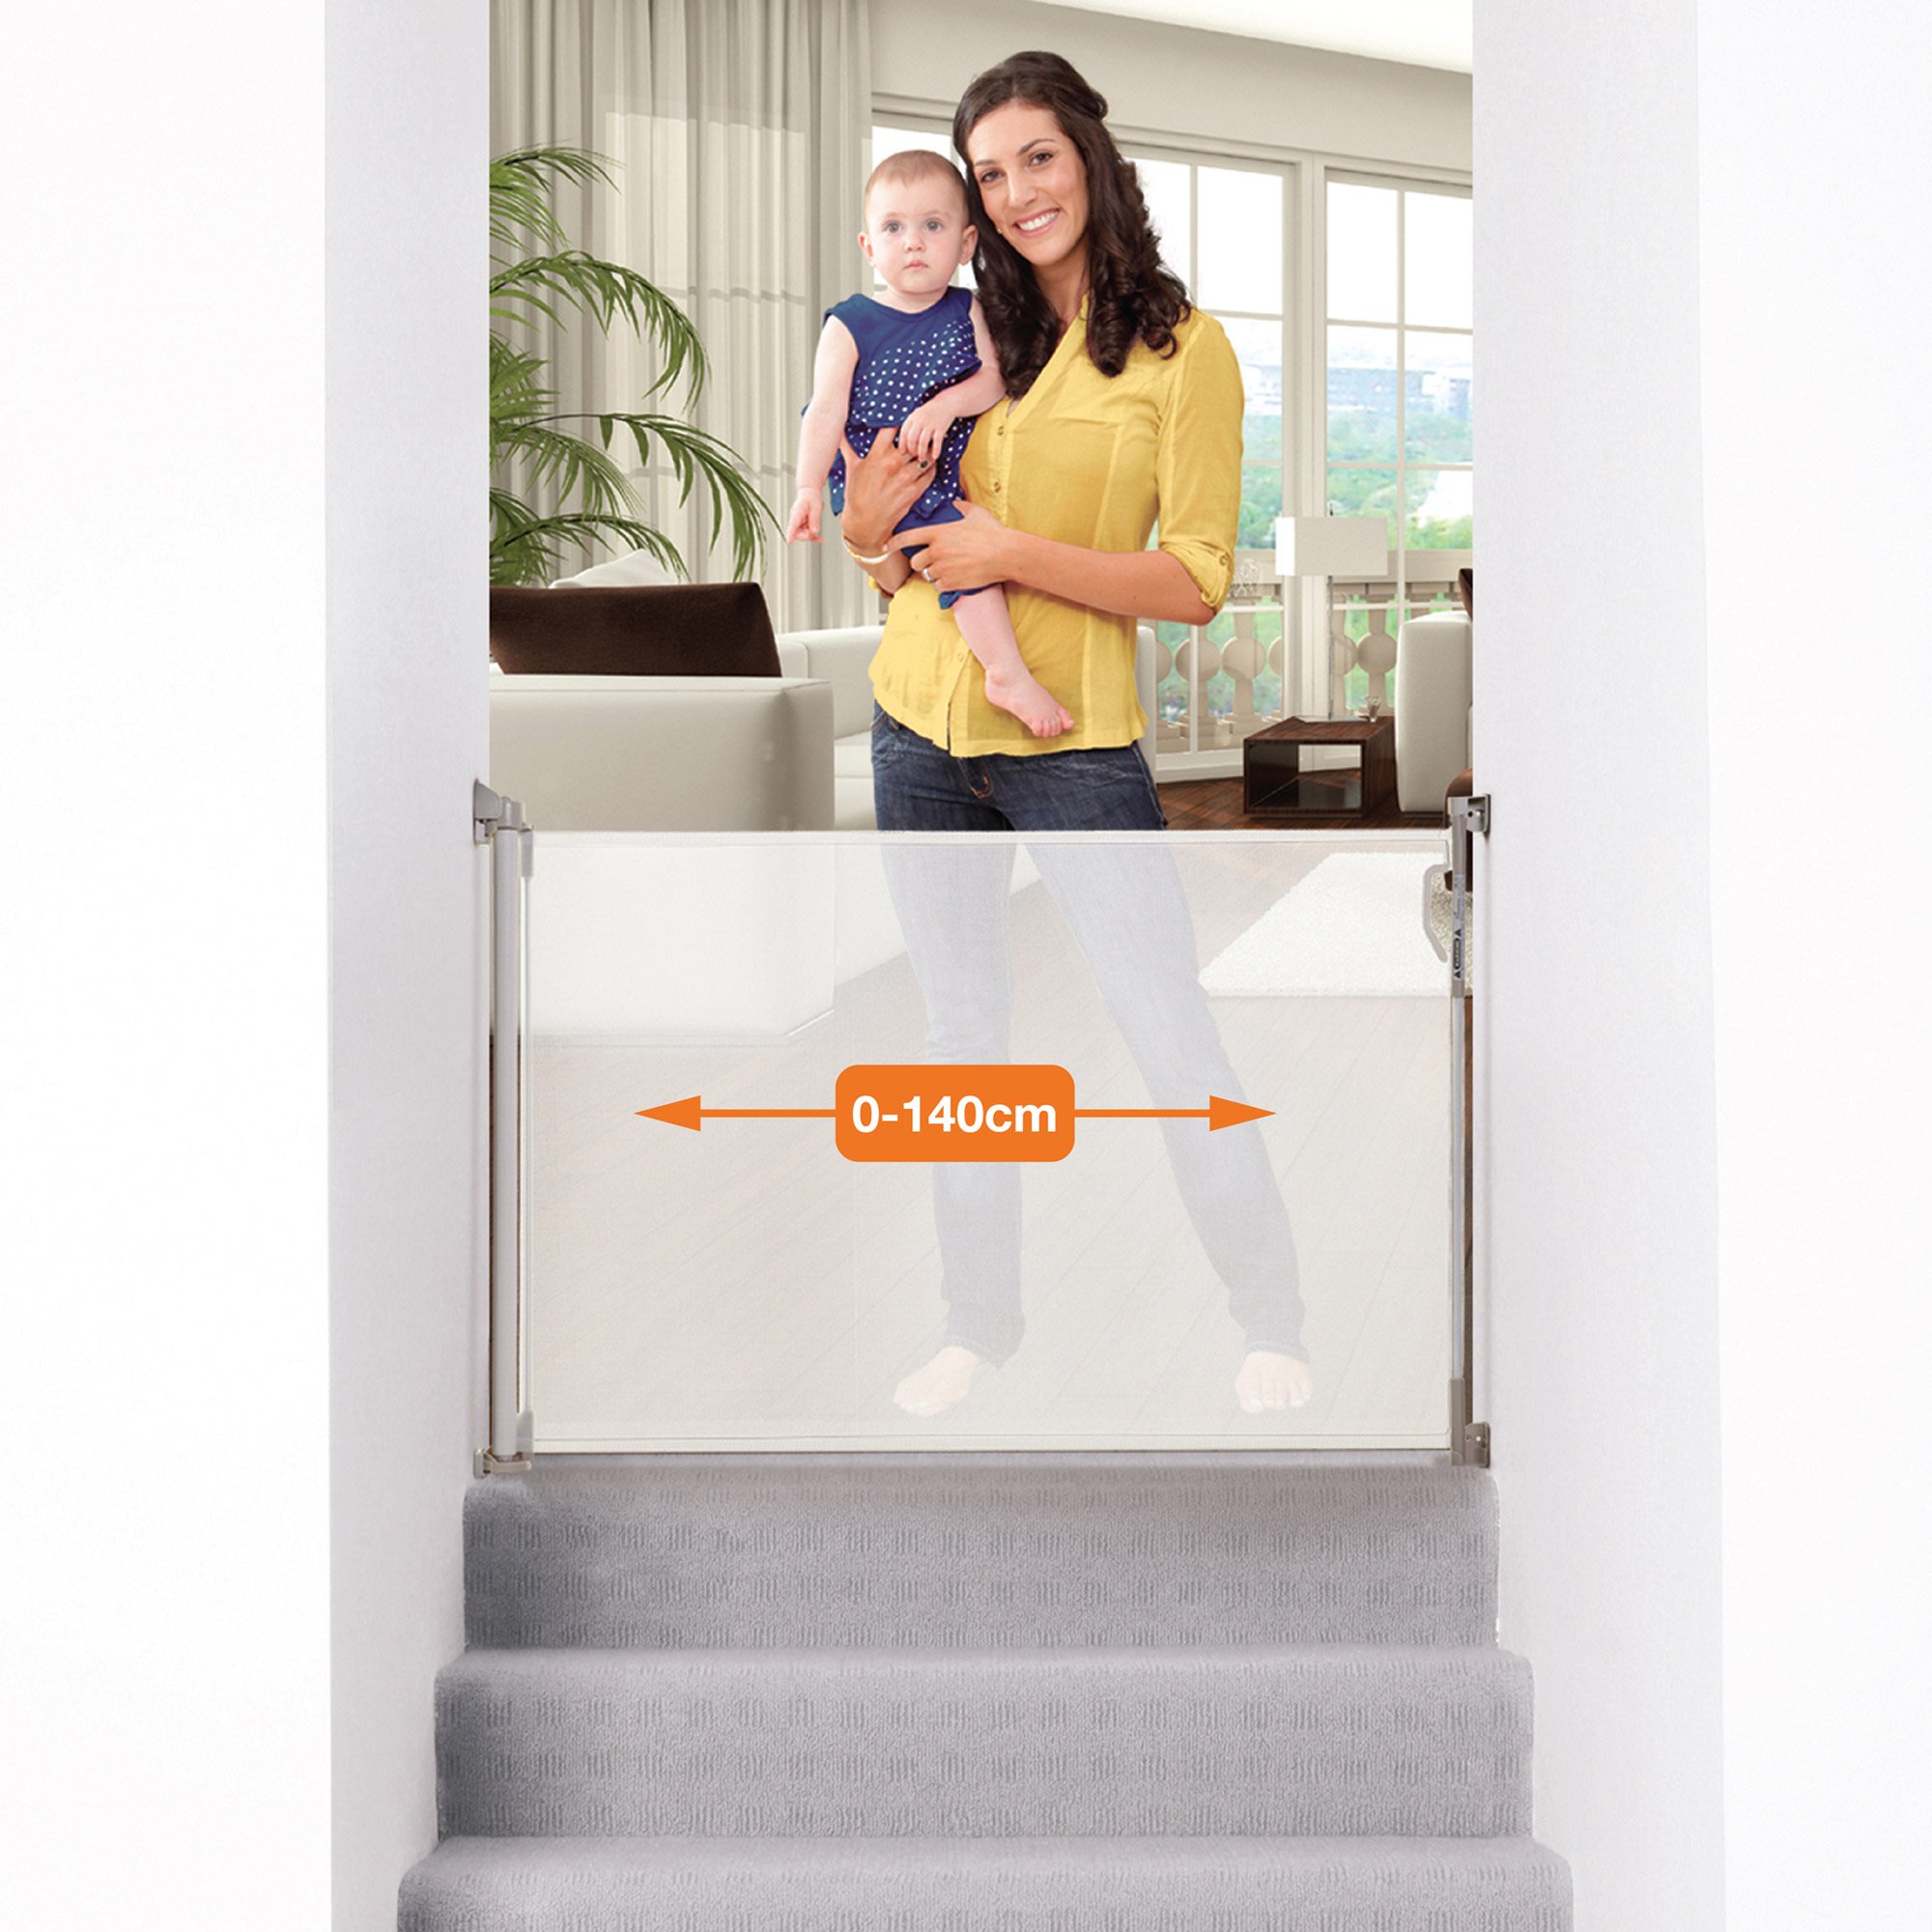 Comparatif et guide d'achat des meilleurs barrière de sécurité escalier -  Barriere escalier